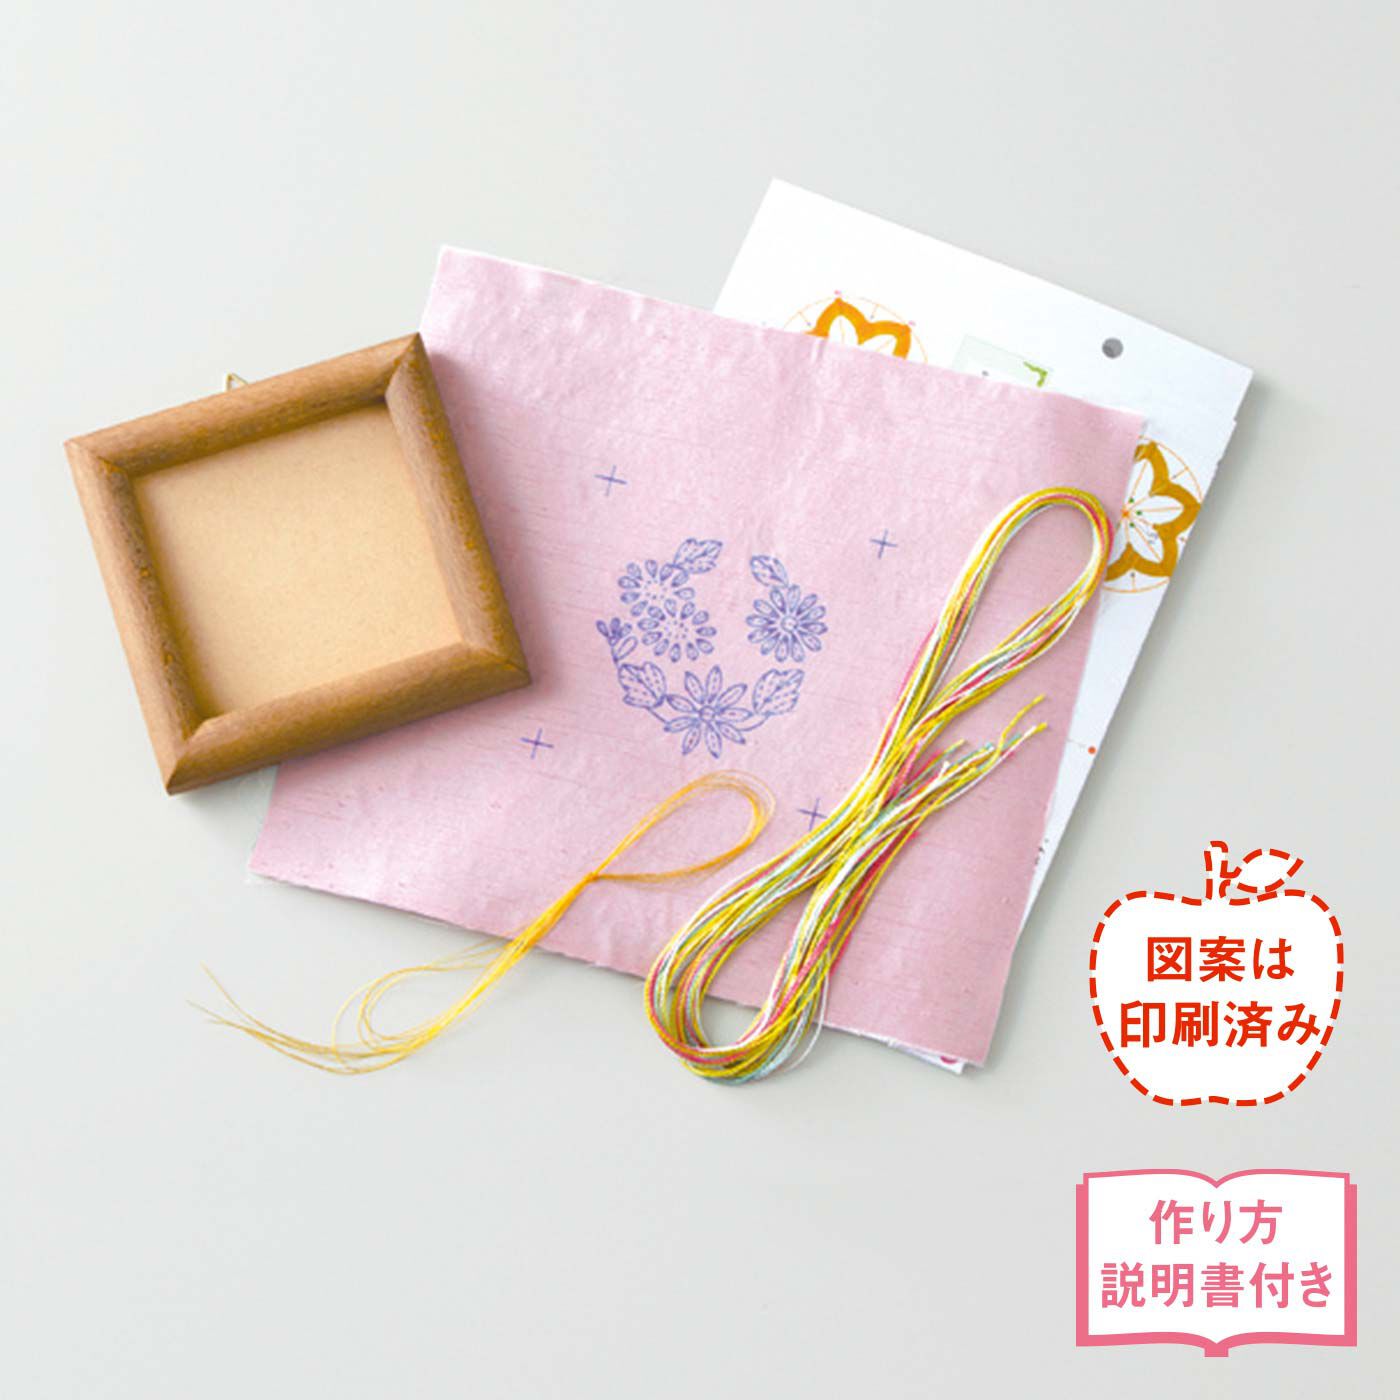 Couturier|日本刺しゅうにあこがれて　絹糸の優美な輝き文様フレームの会|●1回分のお届けキット例です。